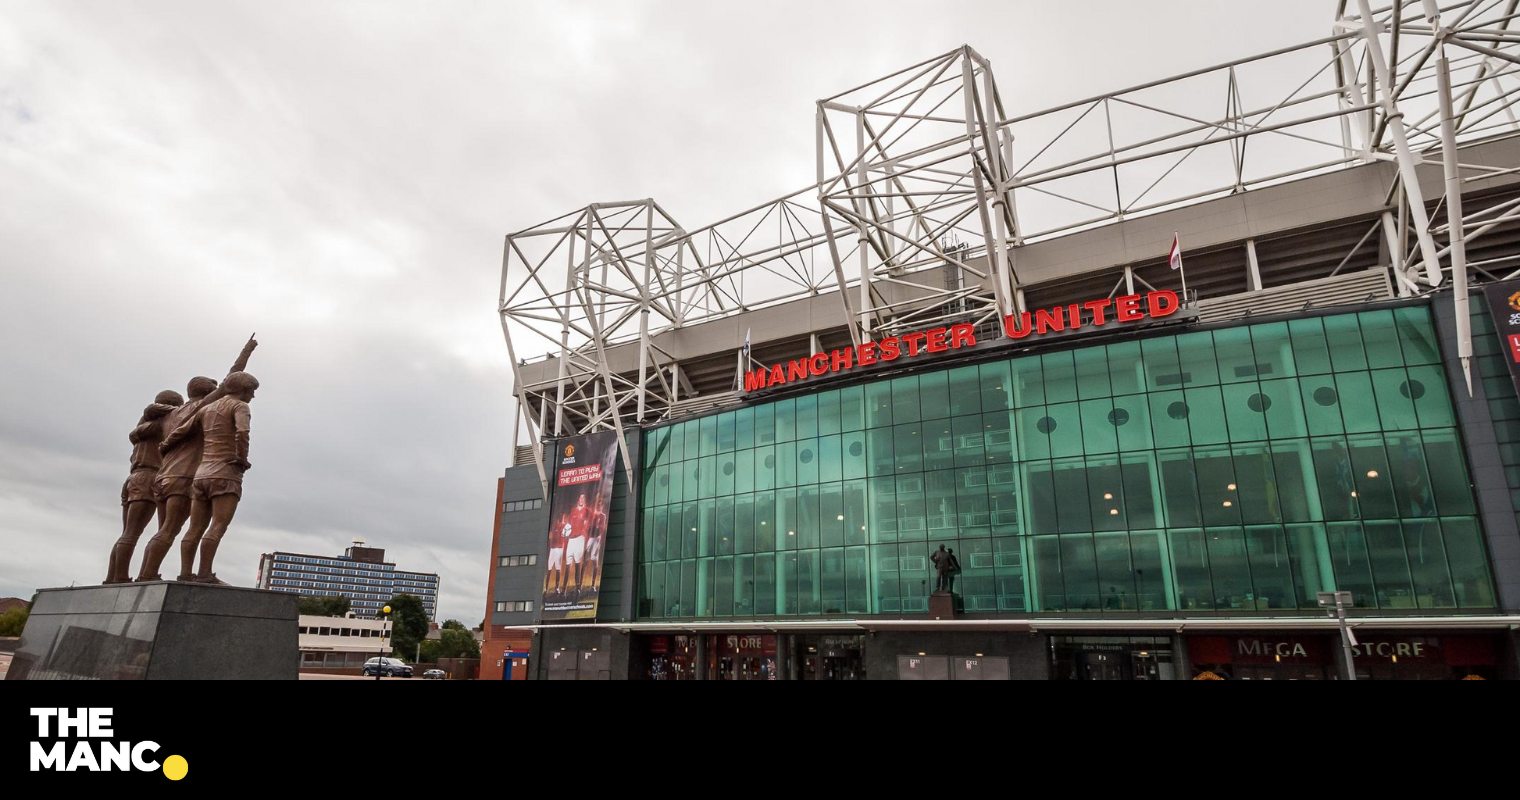 Sheikh Jassim Al-Qatari présente une nouvelle présentation améliorée pour Manchester United